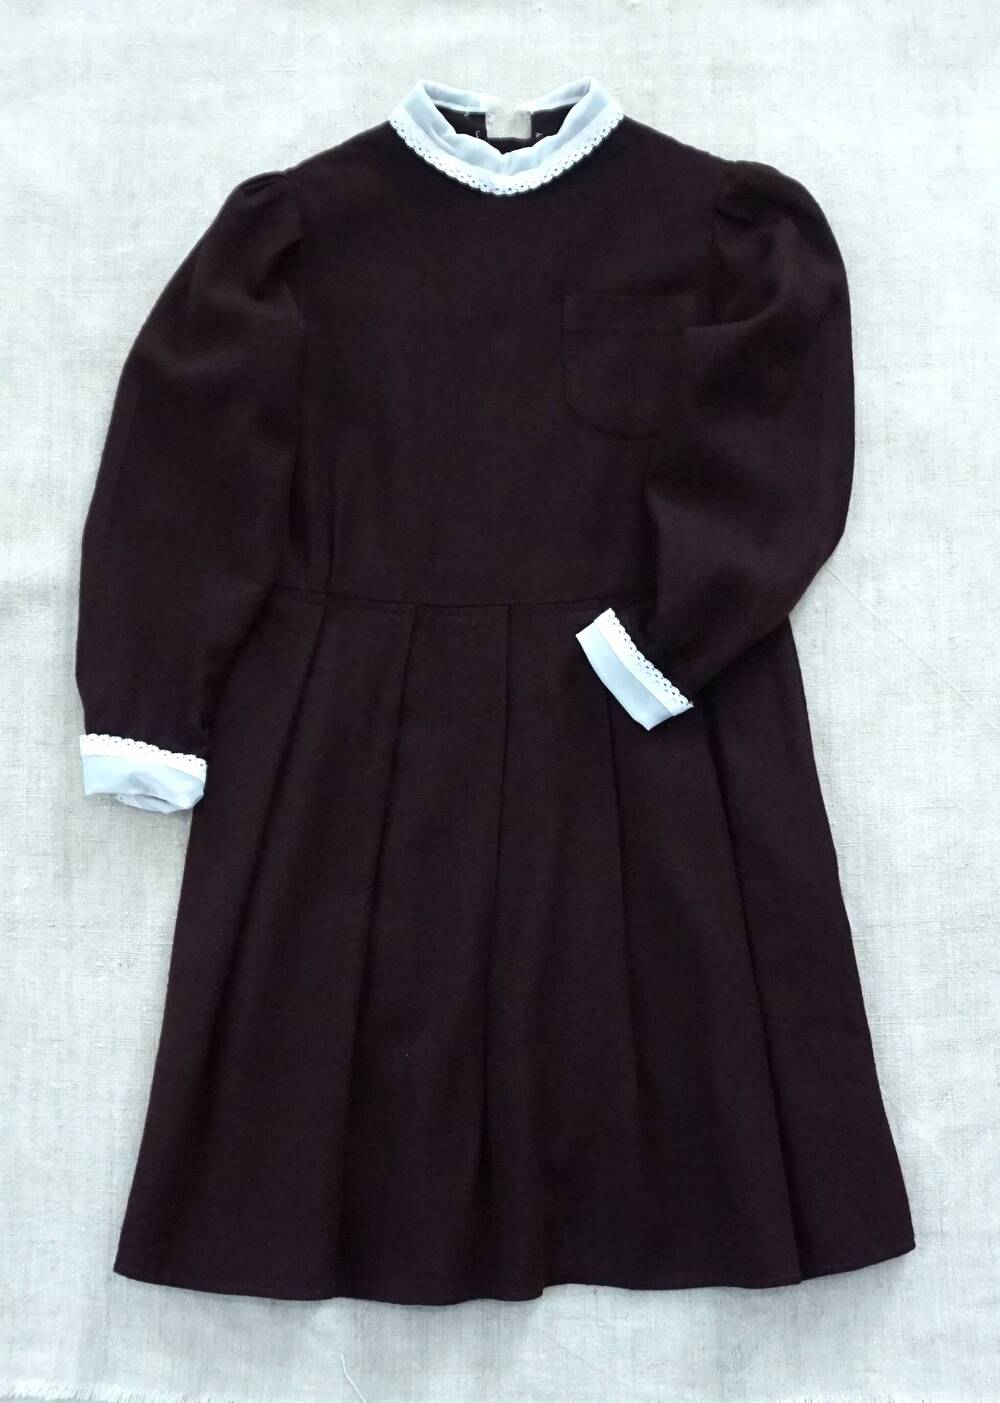 Платье школьное, форма 80-х годов с воротничком и манжетами